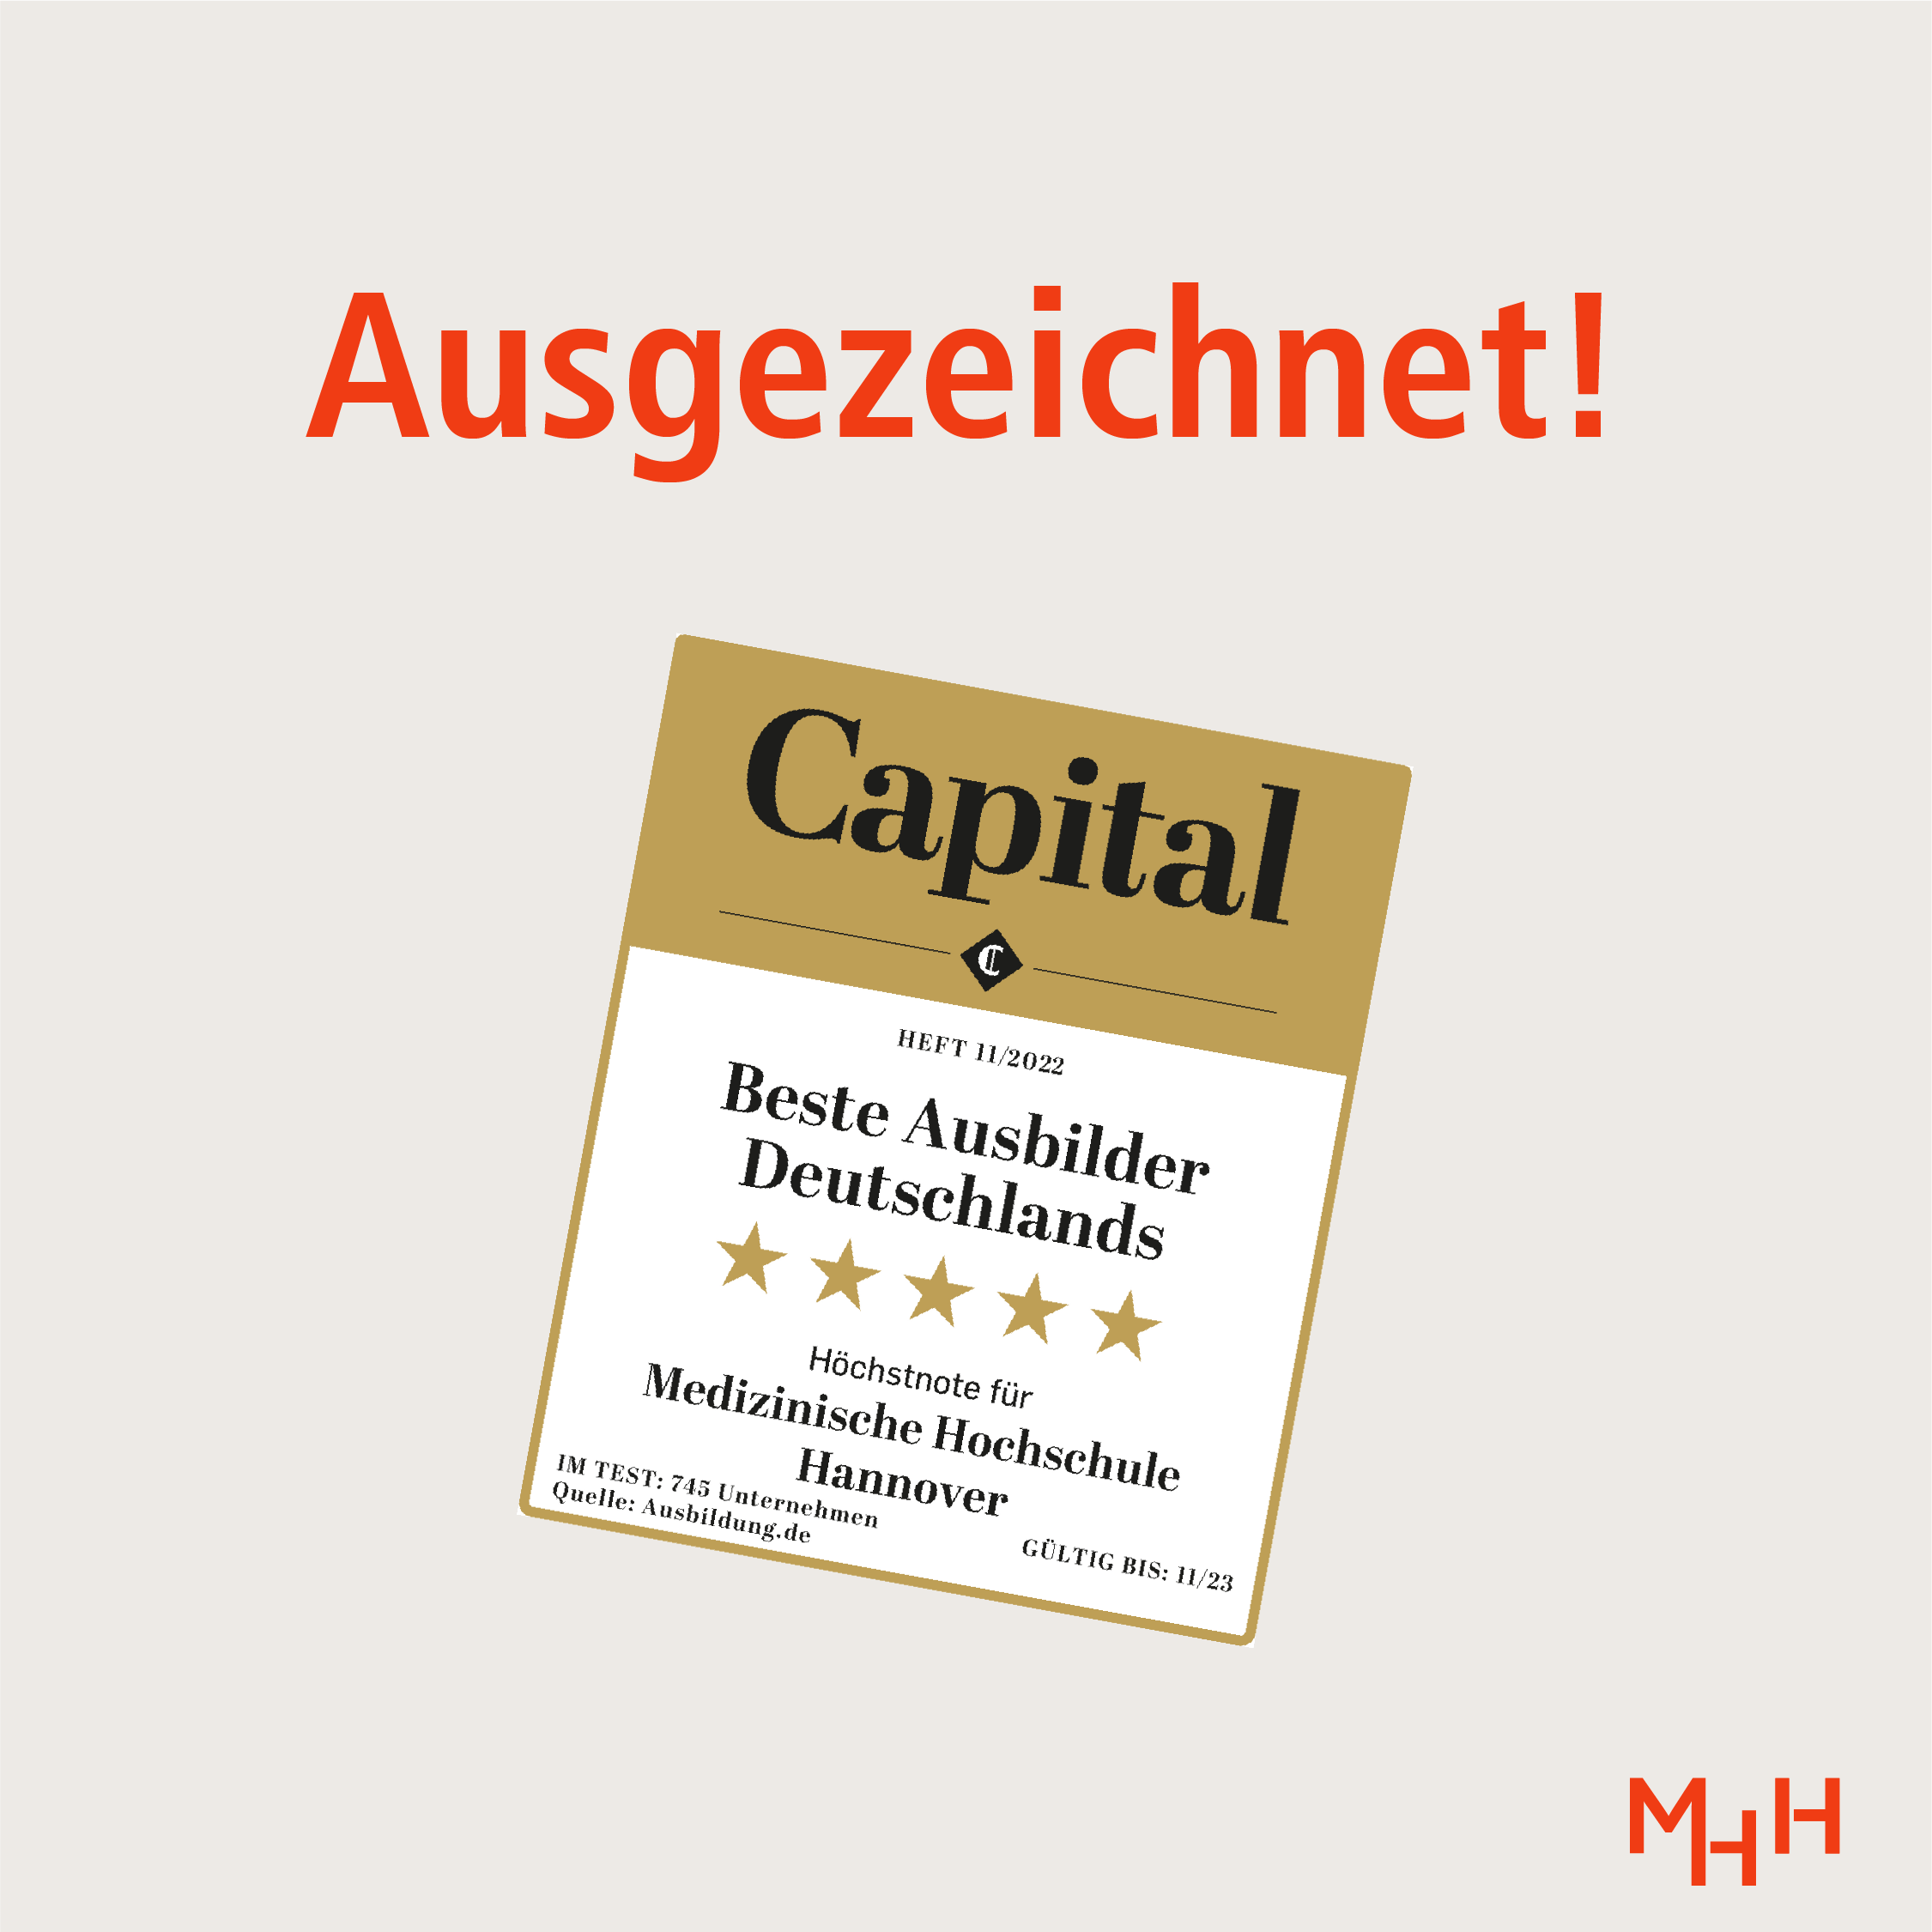 Grafik, rote Schrift auf beigem Grund: "Ausgezeichnet!", Siegel vom Capital Magazin: Bestusbilder Deutschland, Höchstnote für Medizinische Hochschule Hannover